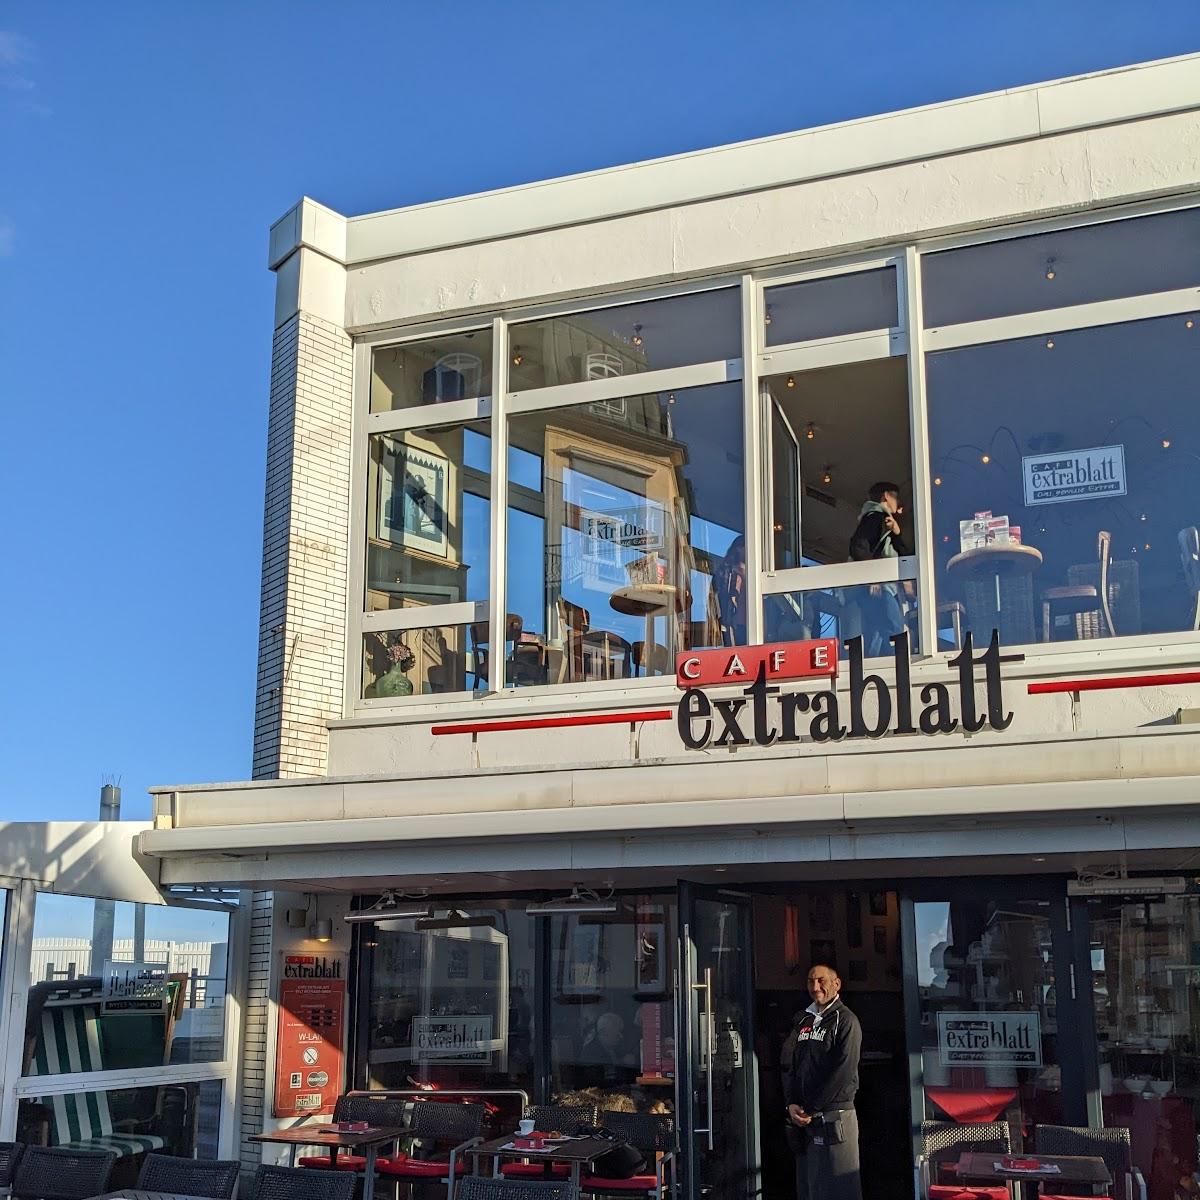 Restaurant "Cafe Extrablatt" in Sylt